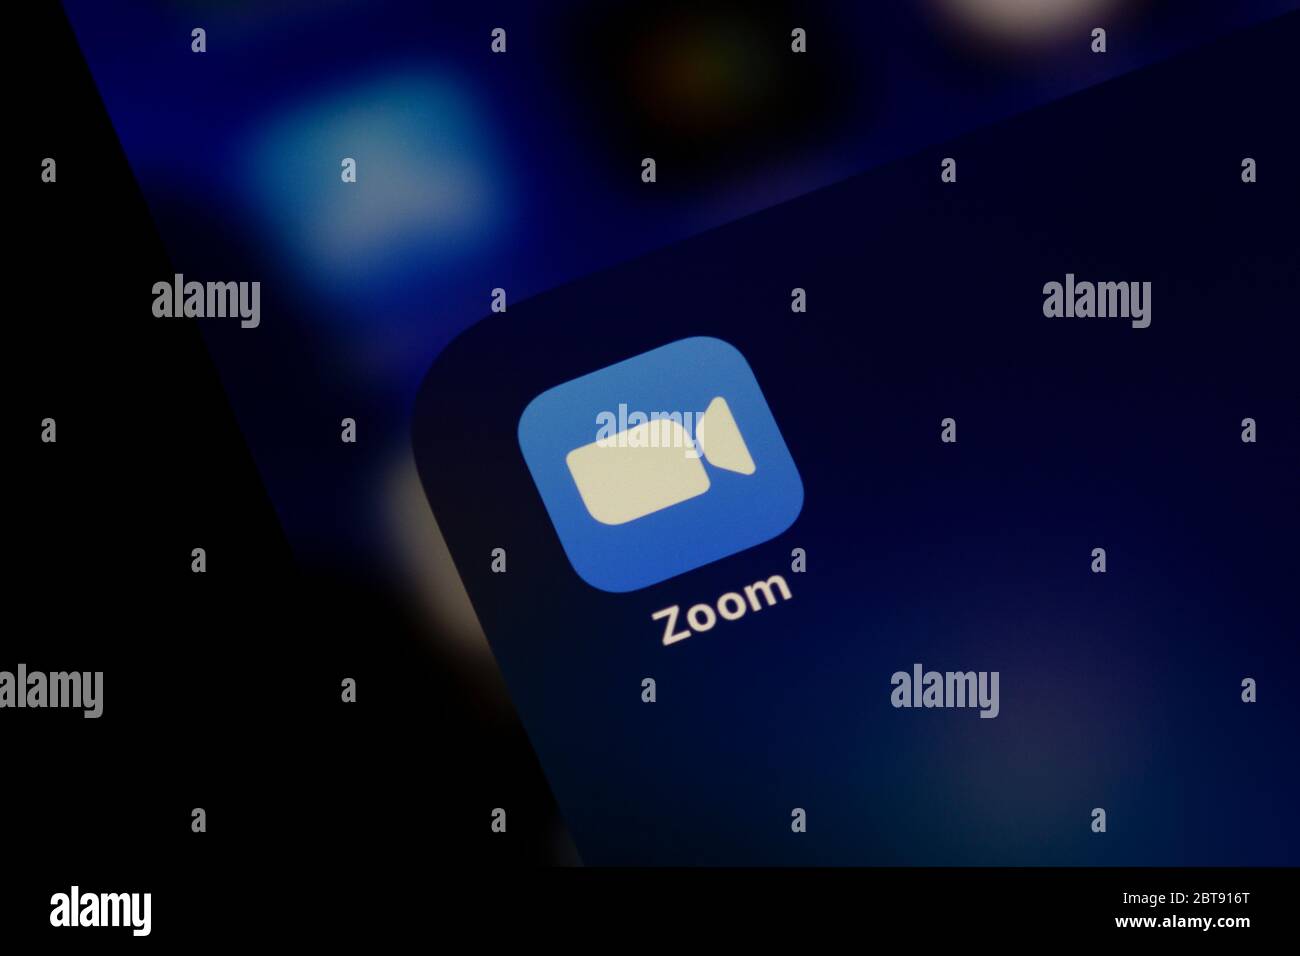 Ostersund, Schweden - 24. Mai 2020: Zoom App Icon. Zoom Video Communications ist ein amerikanisches Unternehmen für Fernkonferenzdienste Stockfoto